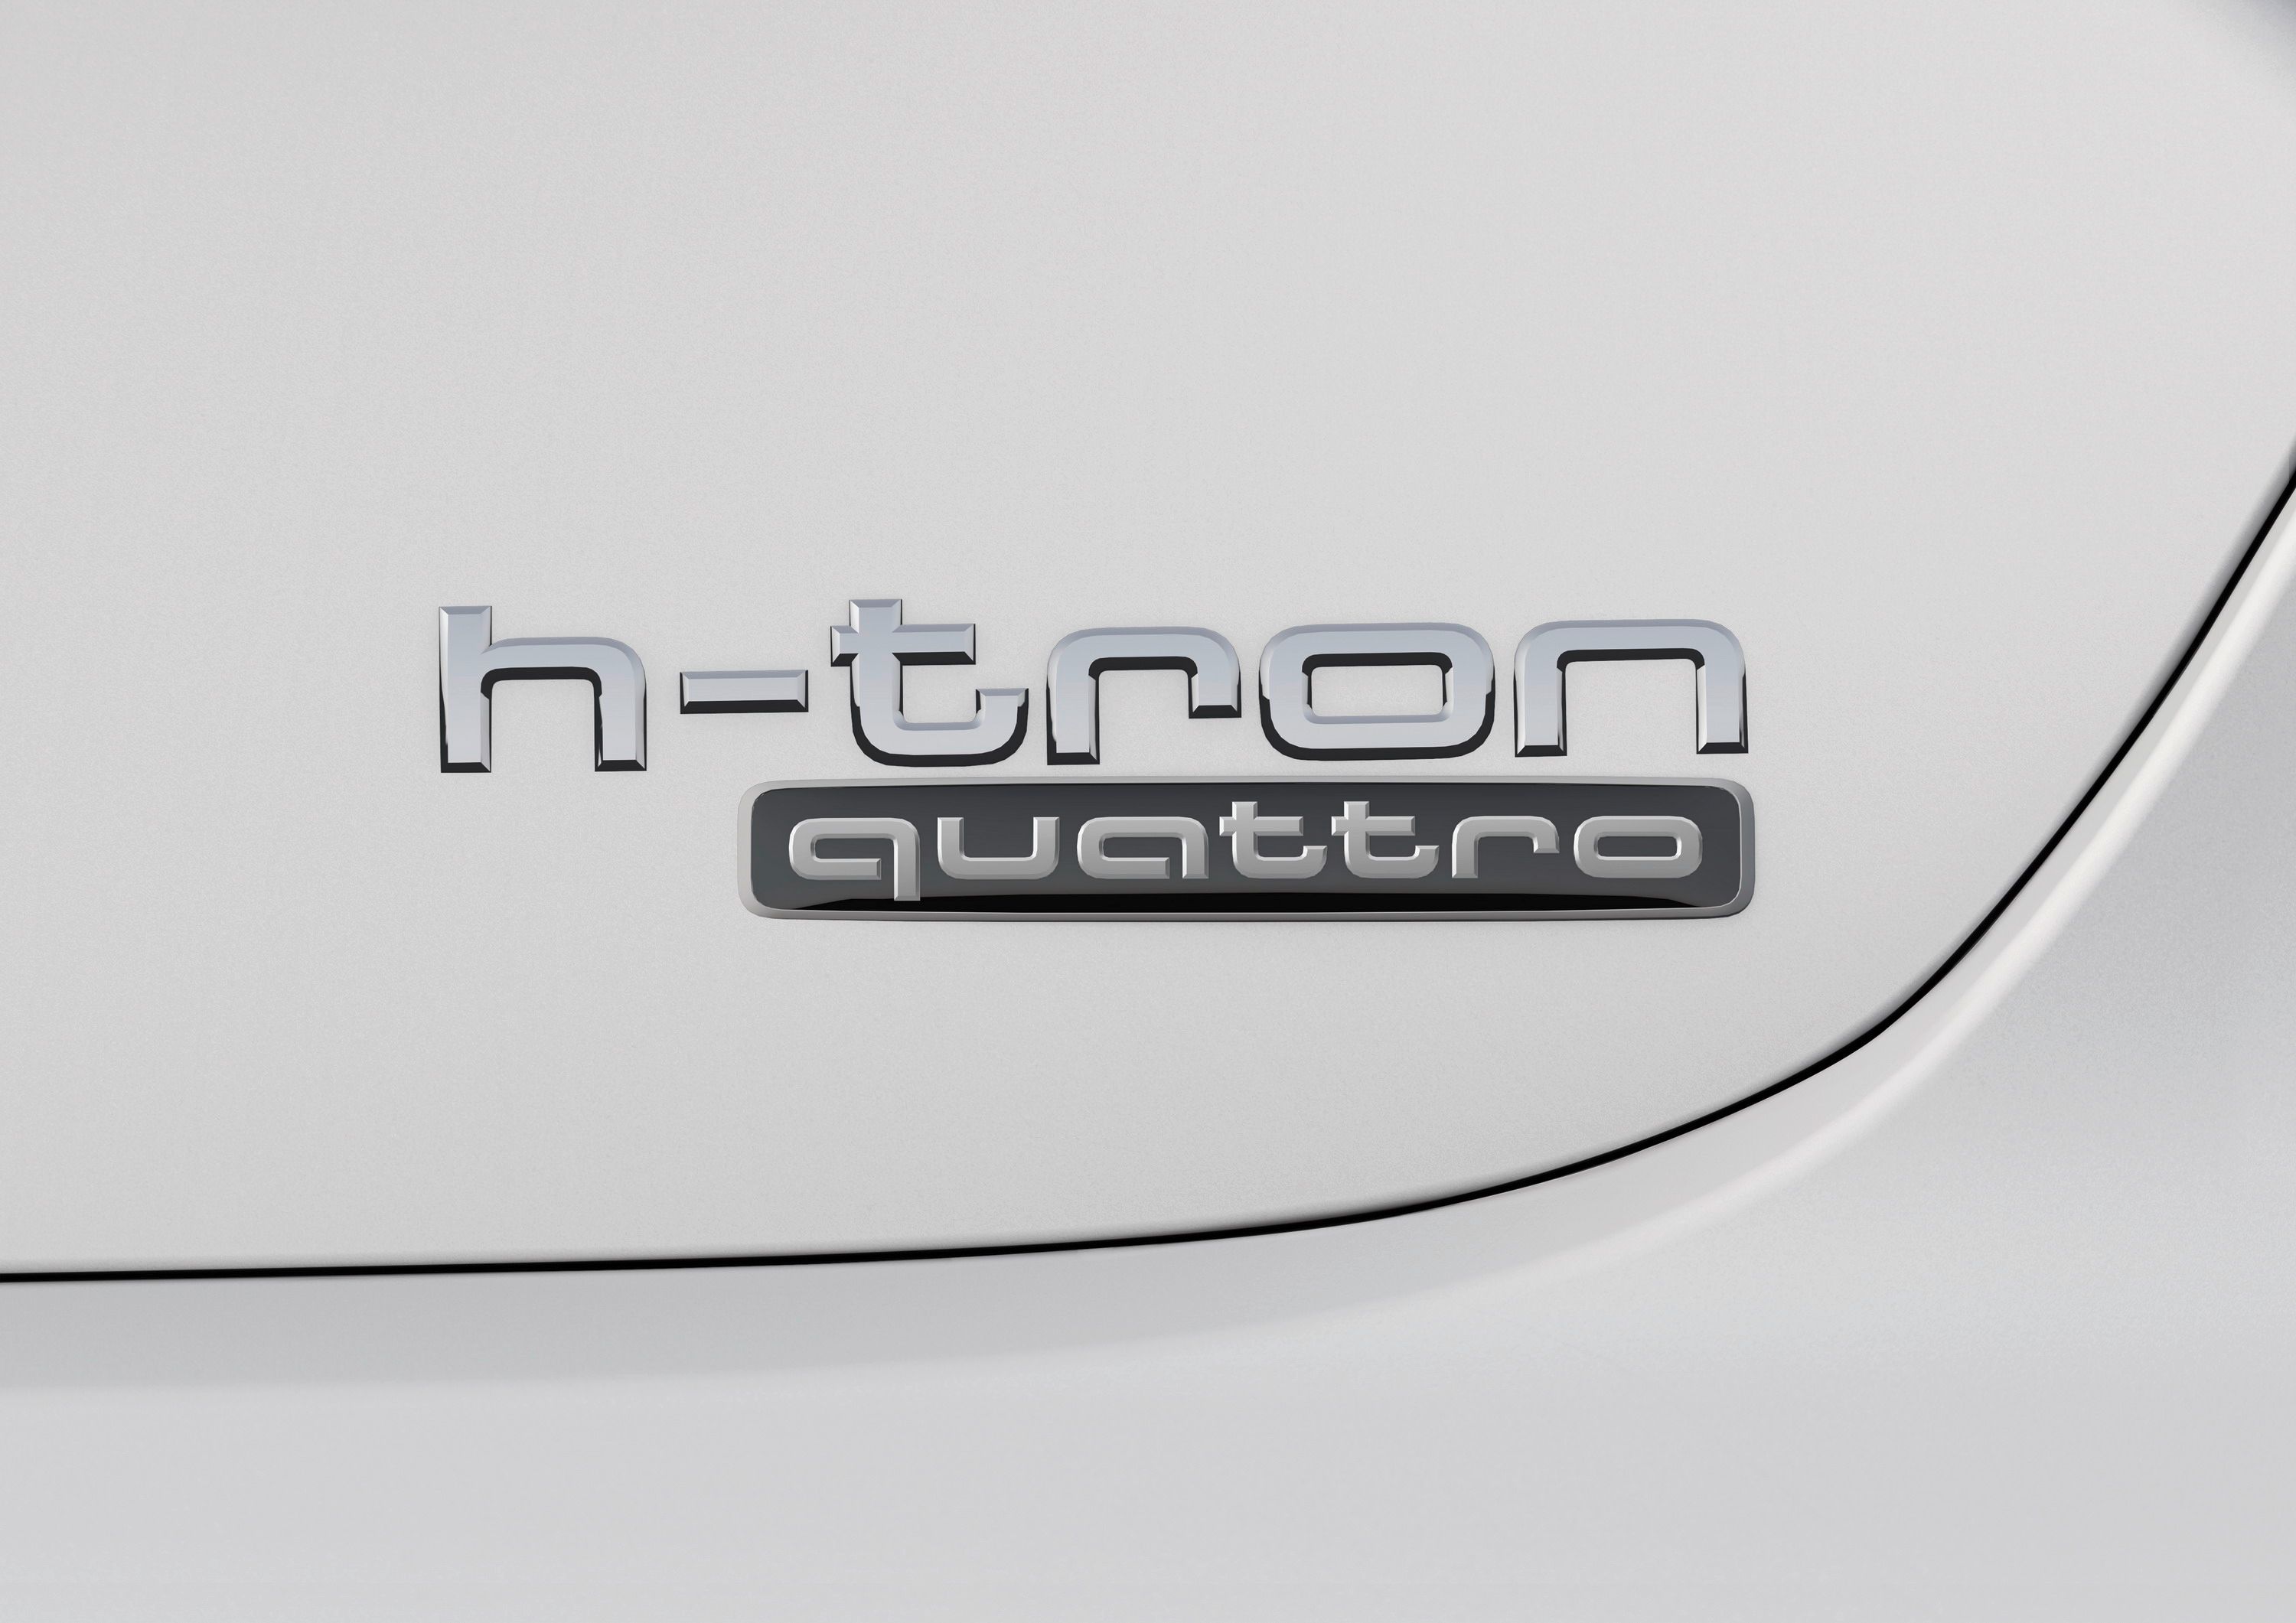 2015 Audi A7 Sportback H-Tron Quattro Concept